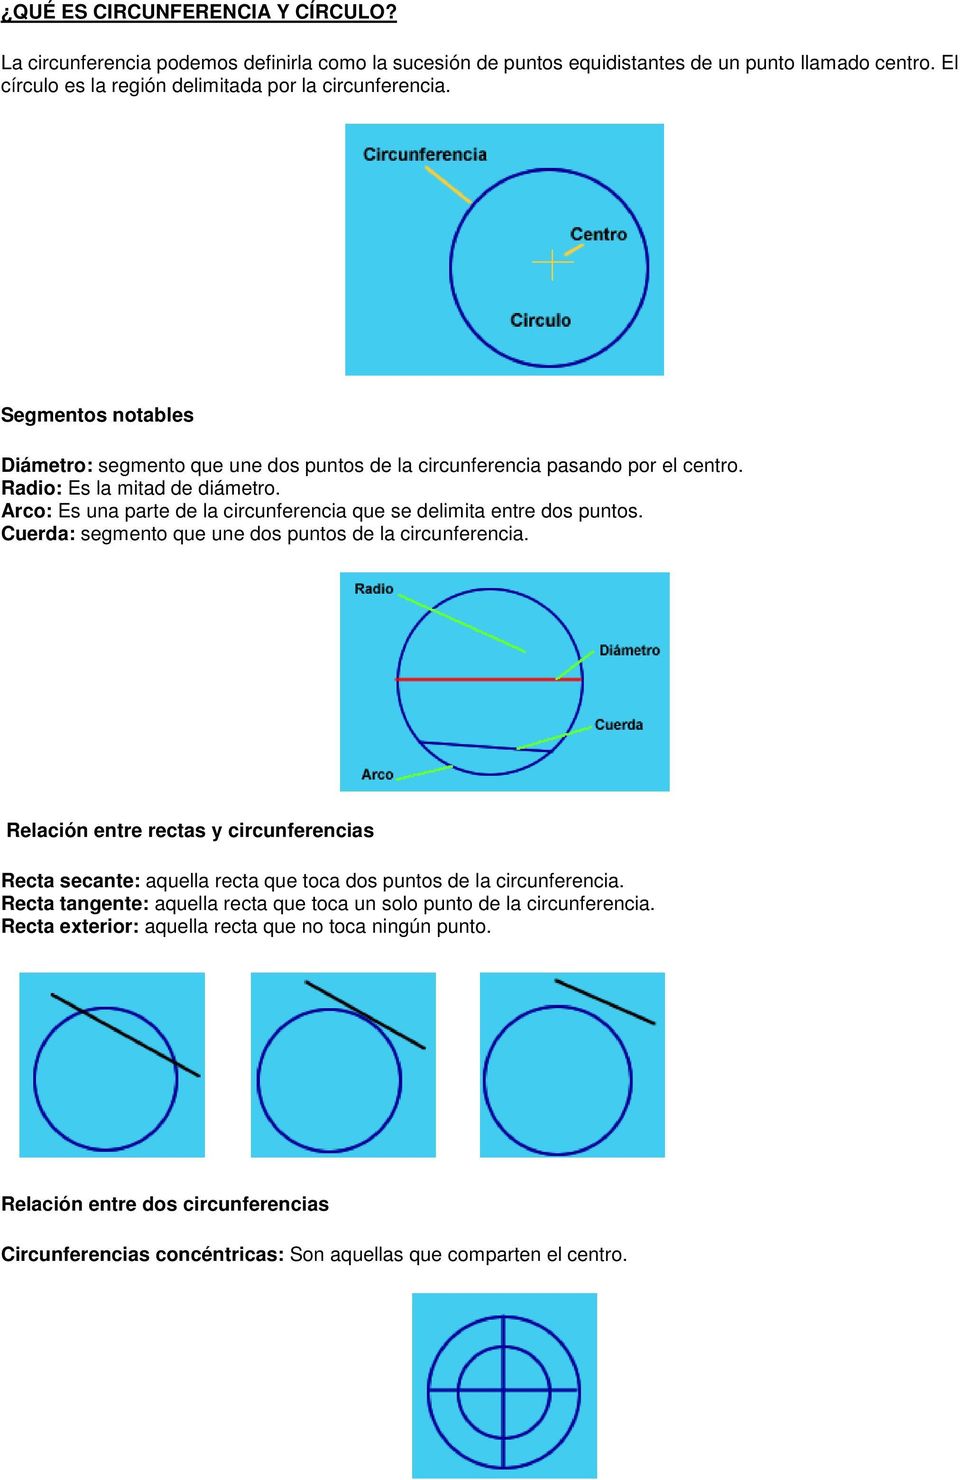 Arco: Es una parte de la circunferencia que se delimita entre dos puntos. Cuerda: segmento que une dos puntos de la circunferencia.